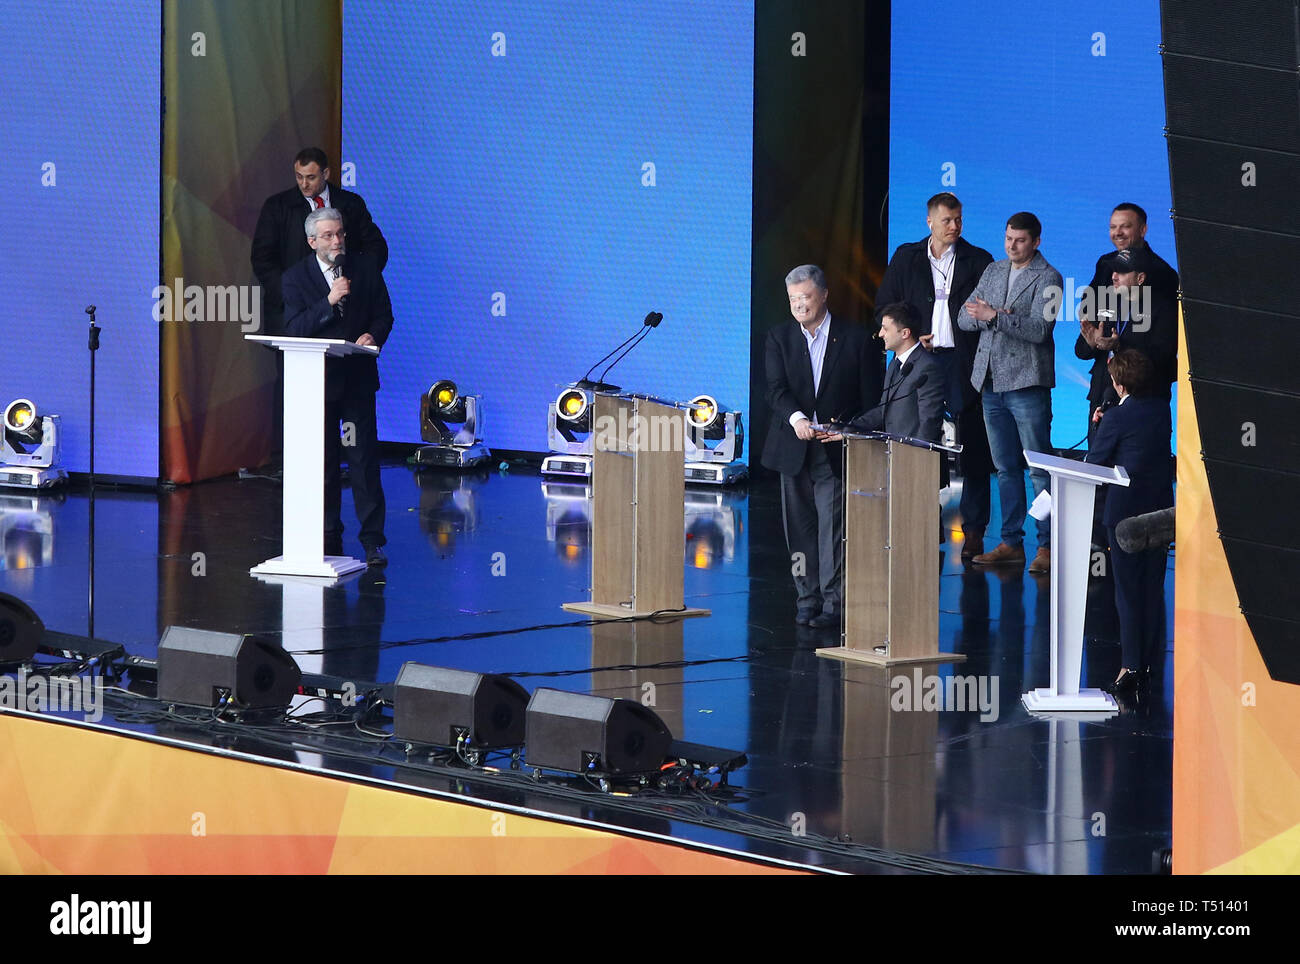 Kiew, Ukraine - 19. April 2019: Ukrainische Präsidentendebatte der aktuelle Präsident der Ukraine Petro Poroschenko und Kandidat Volodymyr Zelensky bei NSC Stockfoto